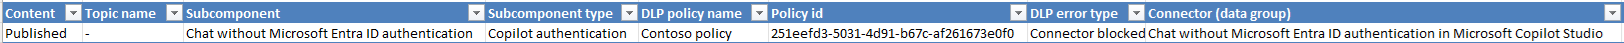 Снимок экрана электронной таблицы загрузки политики DLP.